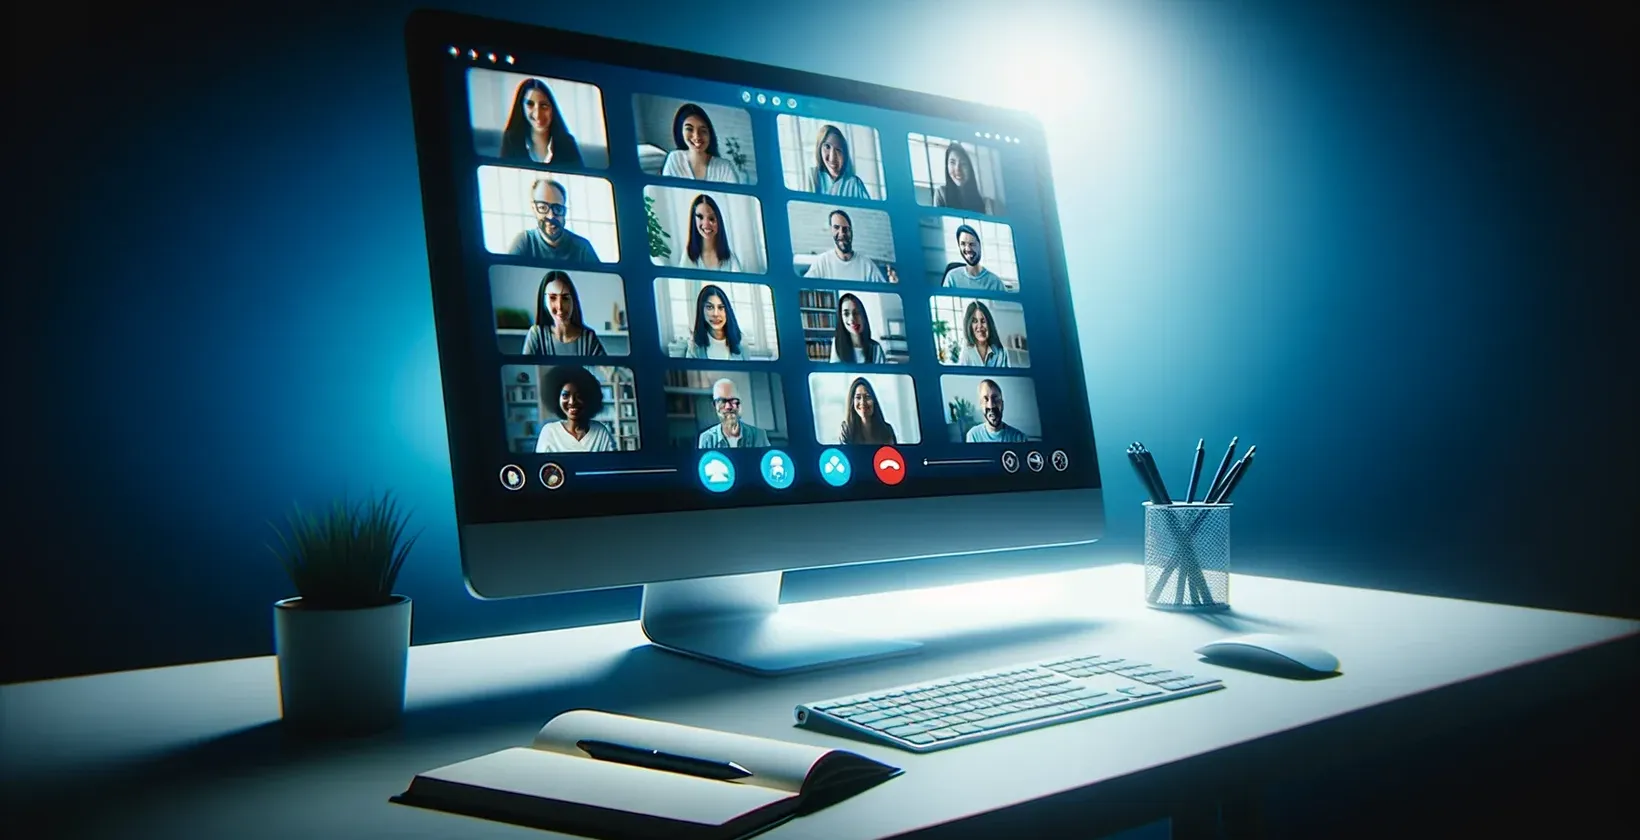 Egy számítógép képernyőjének képe, amelyen egy GoToMeeting ülés látható, egy csoport emberrel és élő átírással.